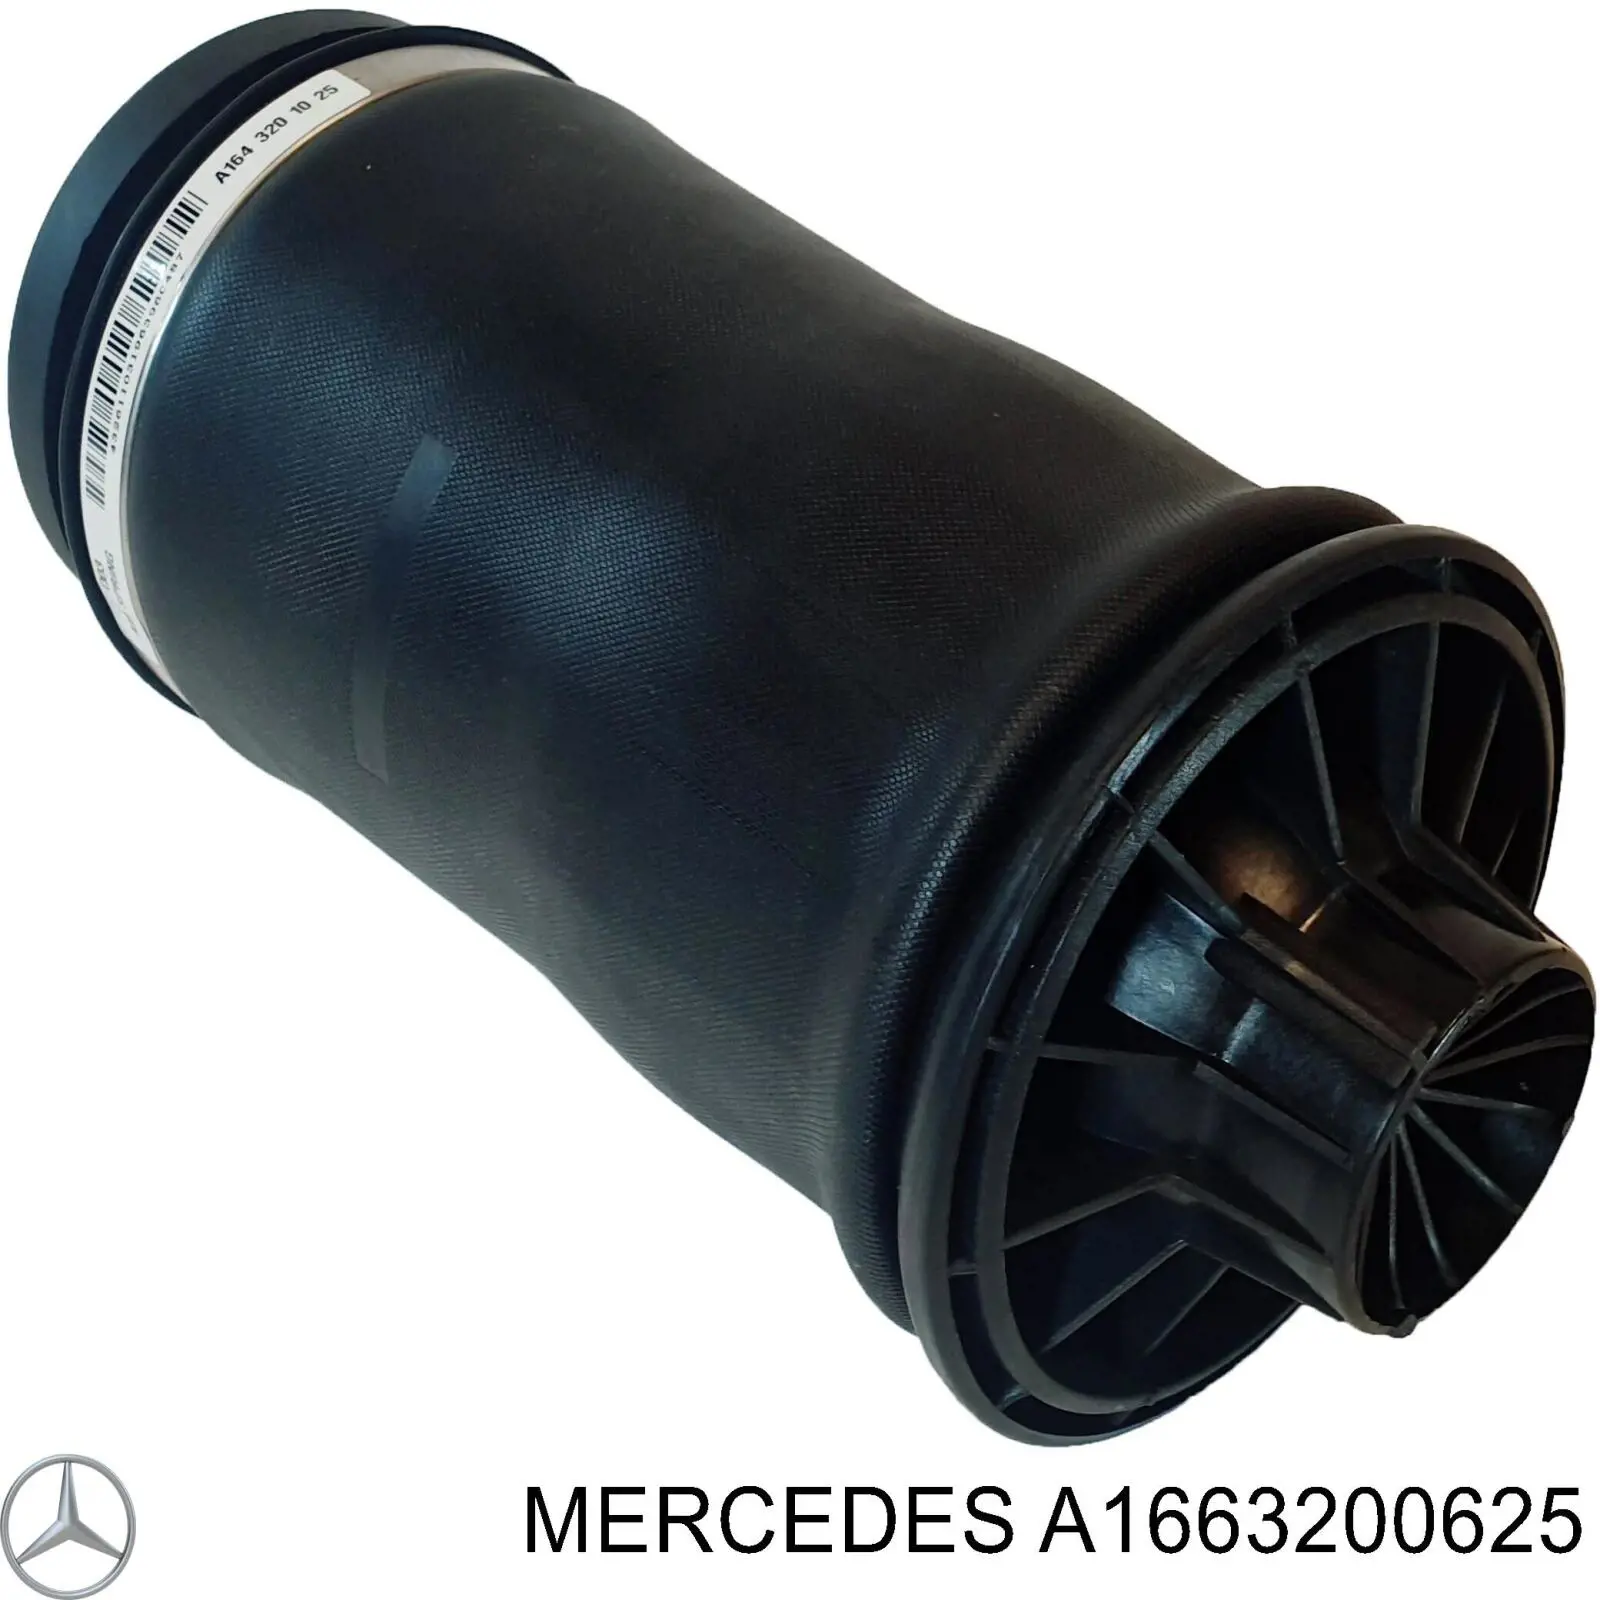 A1663200625 Mercedes coxim pneumático (suspensão de lâminas pneumática do eixo traseiro)